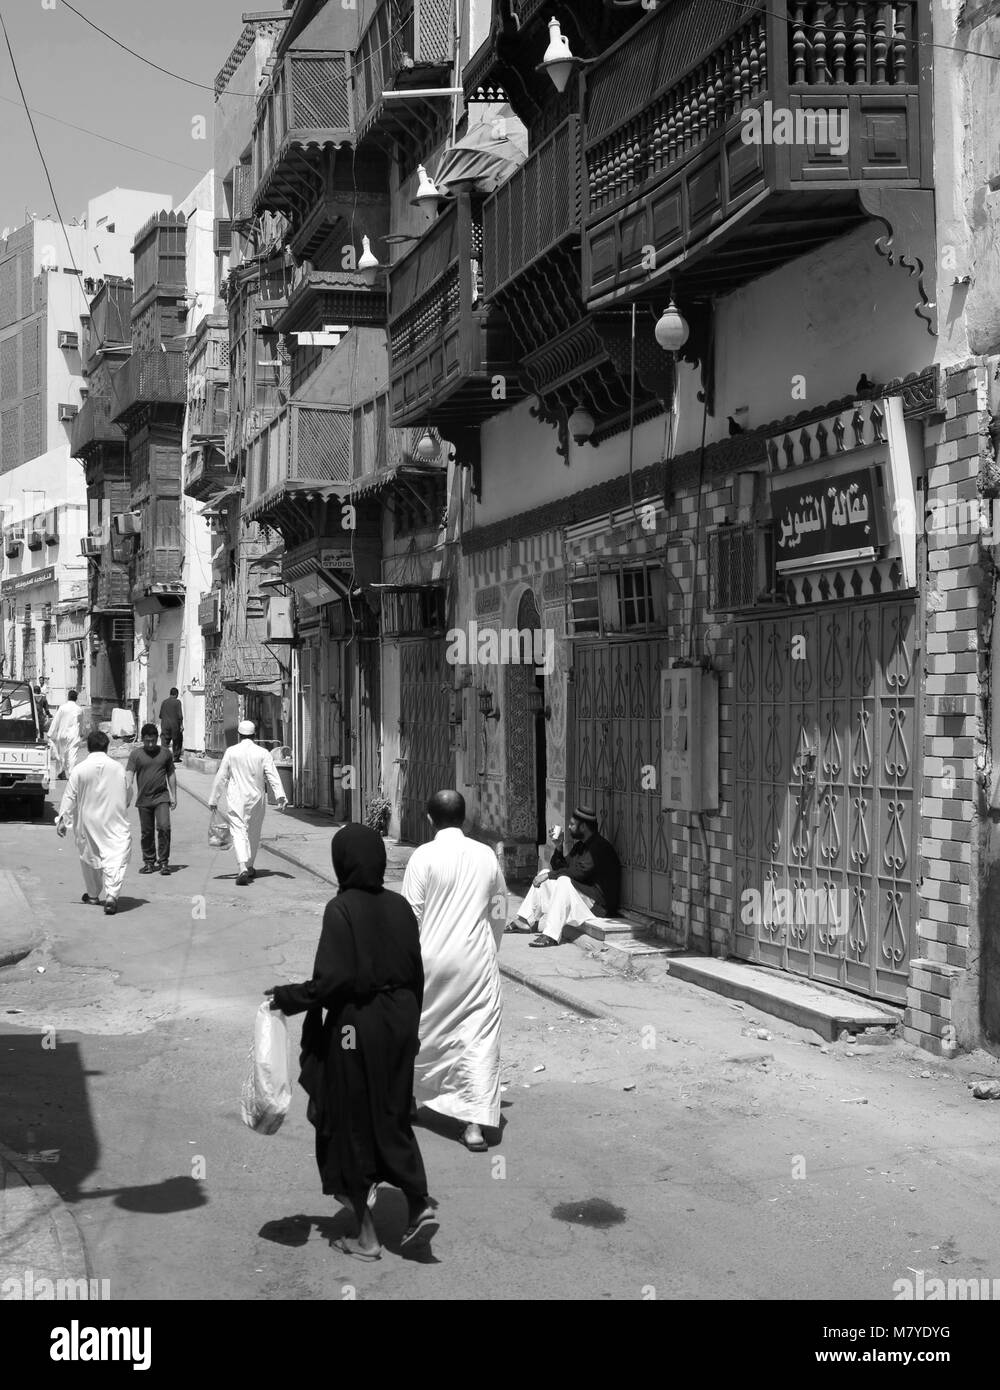 La vita di strada, architettura e sorprendete le vecchie case in legno con finestre a bovindo e mashrabya in Al Balad, Jeddah, Arabia Saudita Foto Stock